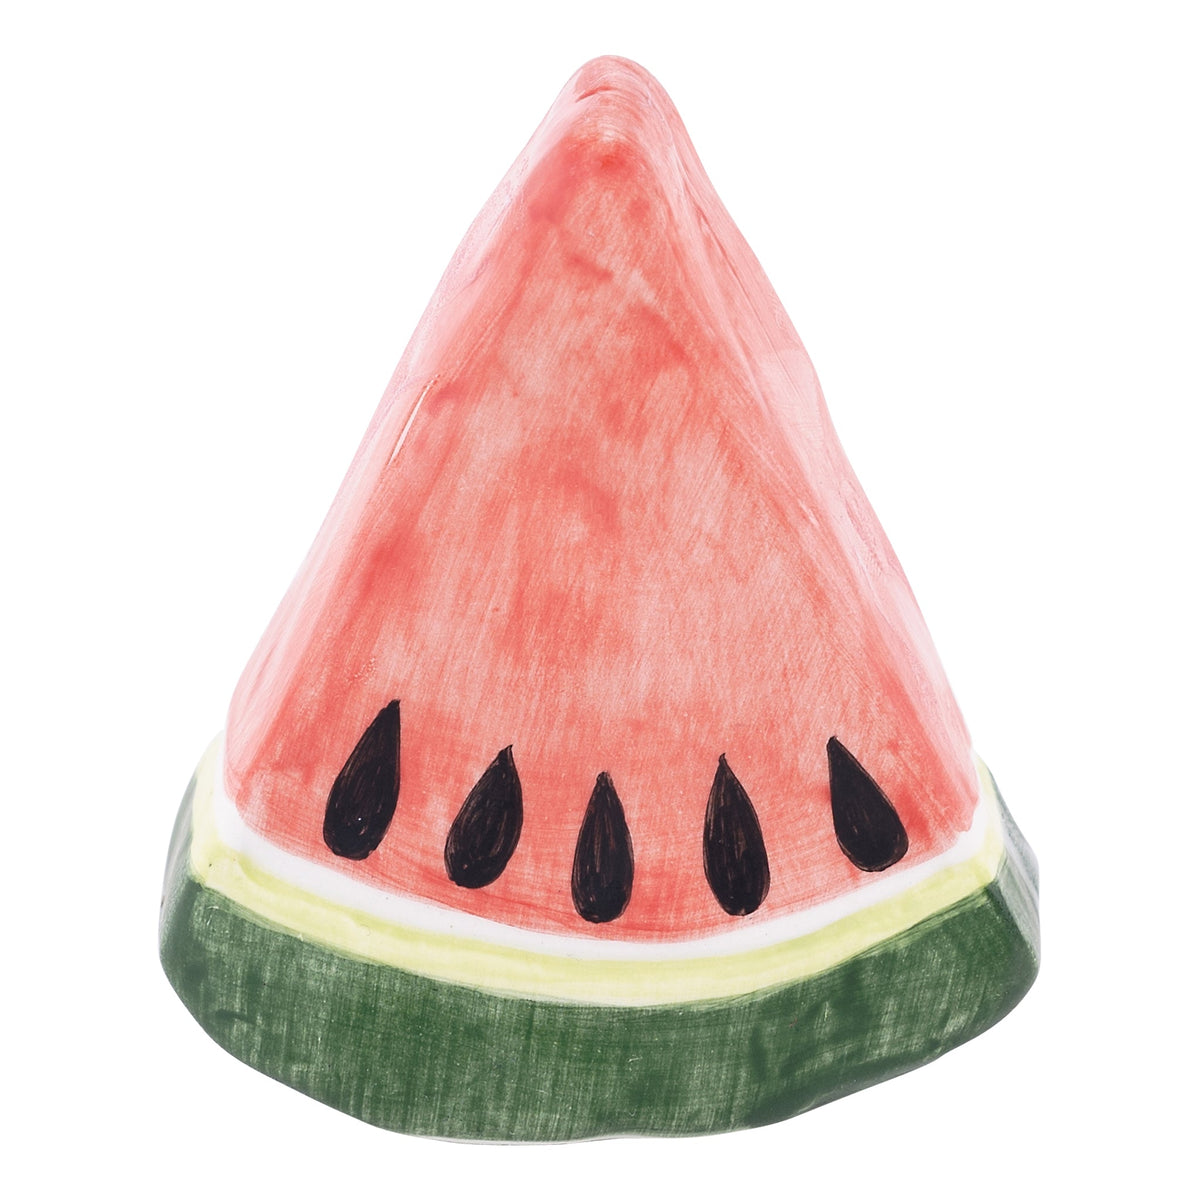 Watermelon Slice Charcuterie Board Topper